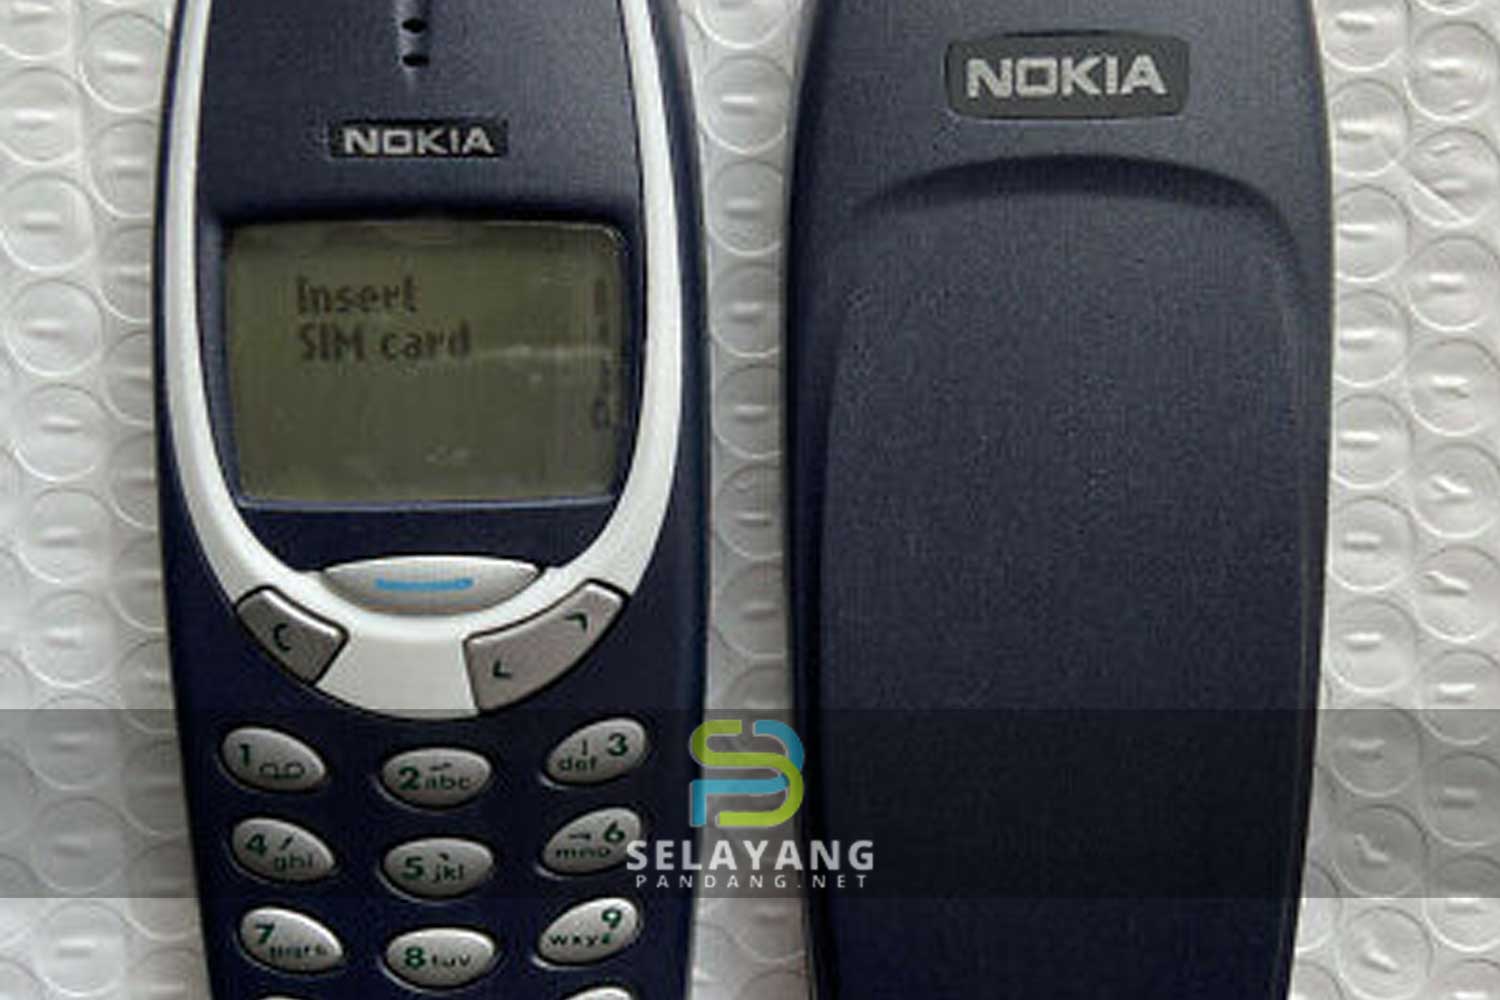 Telefon Nokia 3310 dijual pada harga RM20,000, apa kelebihannya? Ini punca jadi mahal